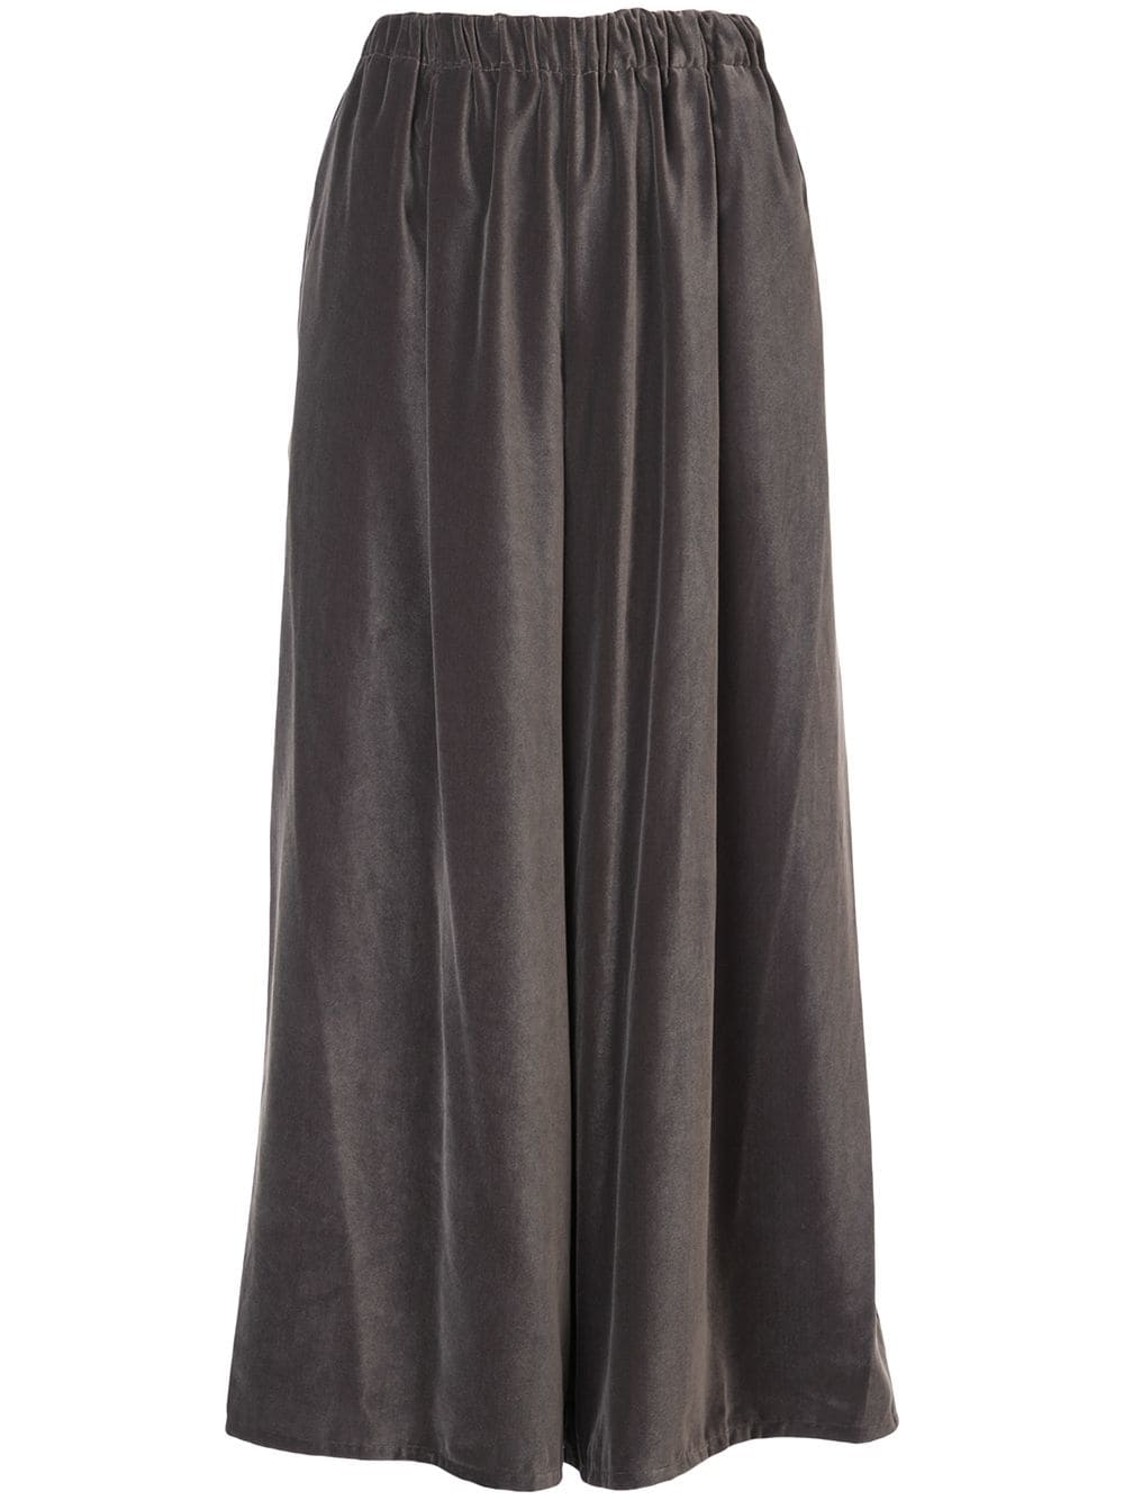 shop Dusan Saldi Pantaloni: Pantalone Dusan, modello ampio, elastico in vita, tasche laterali, color grigio.

Composizione: 100% velluto. number 1341